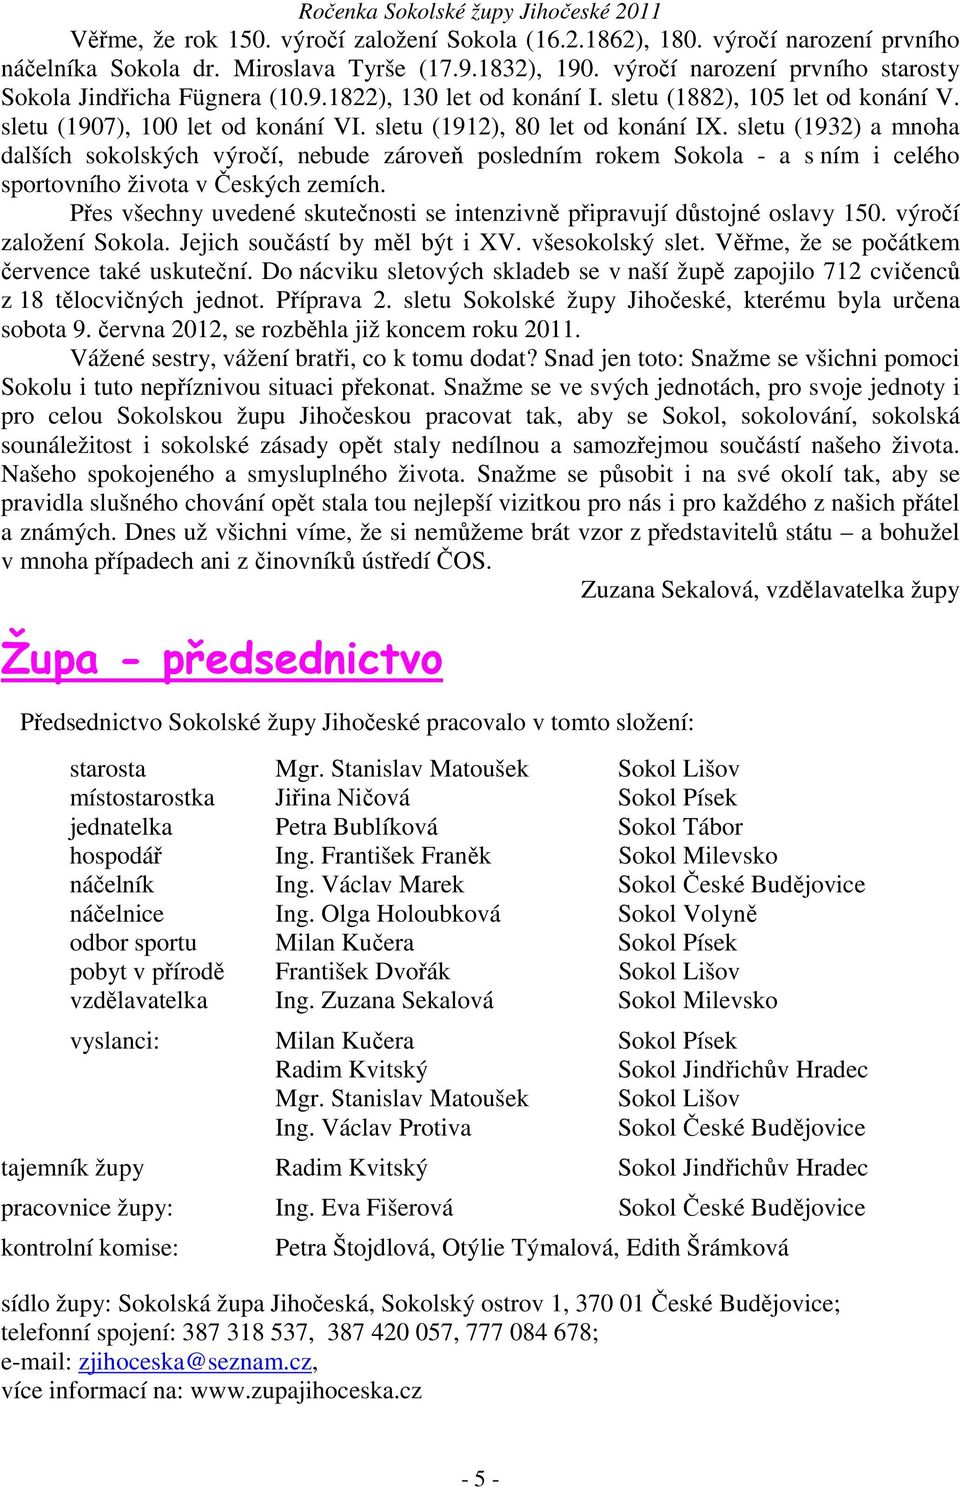 sletu (1932) a mnoha dalších sokolských výročí, nebude zároveň posledním rokem Sokola - a s ním i celého sportovního života v Českých zemích.